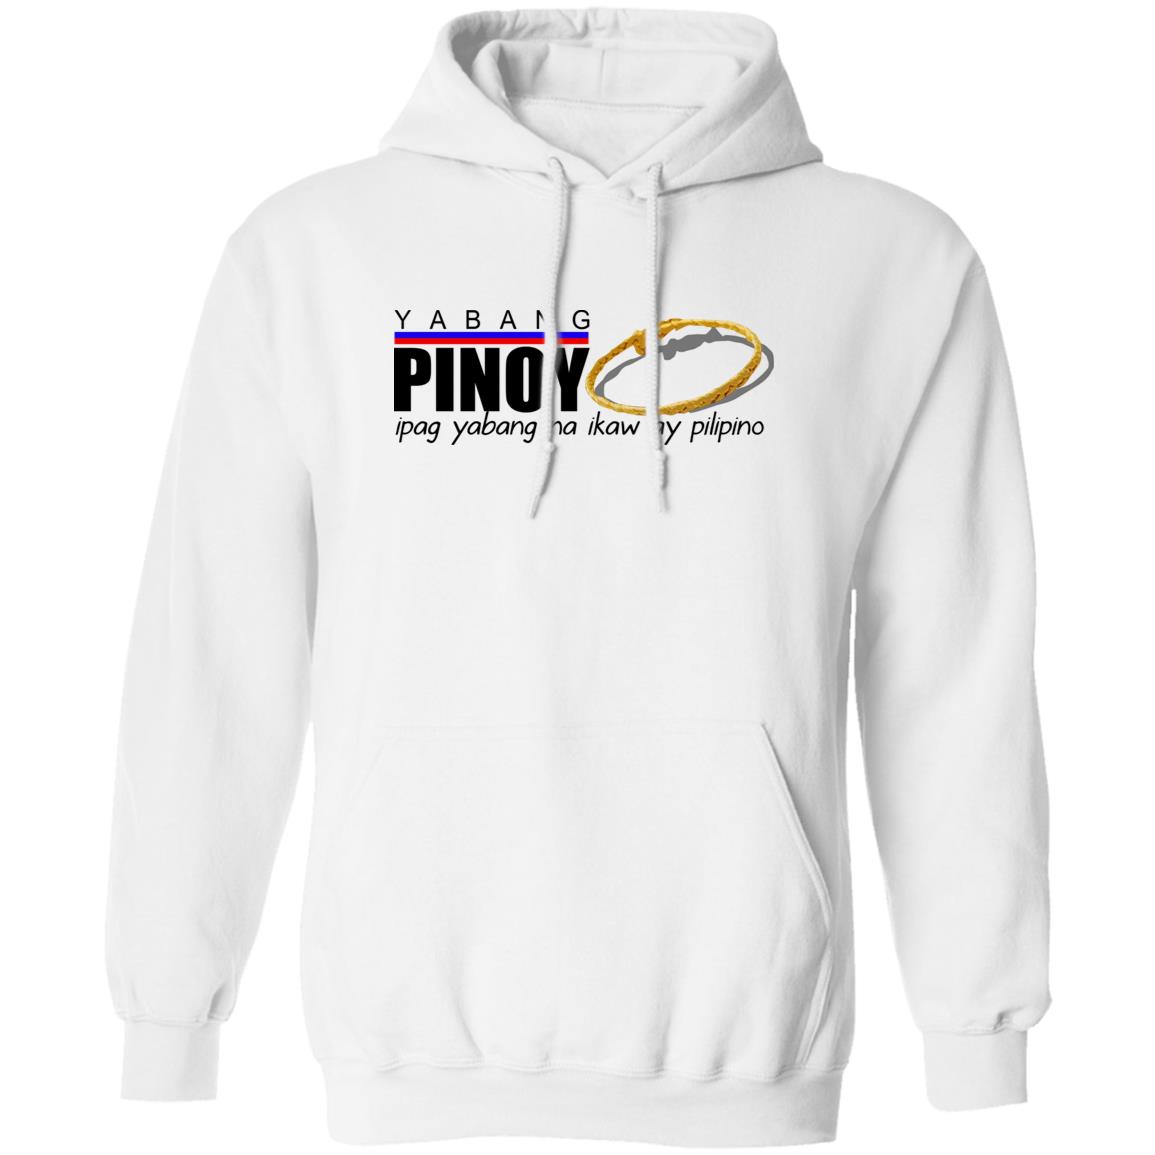 Yabang Pinoy Ipag Yabang Na Ikaw Ay Pilipino Shirt 1